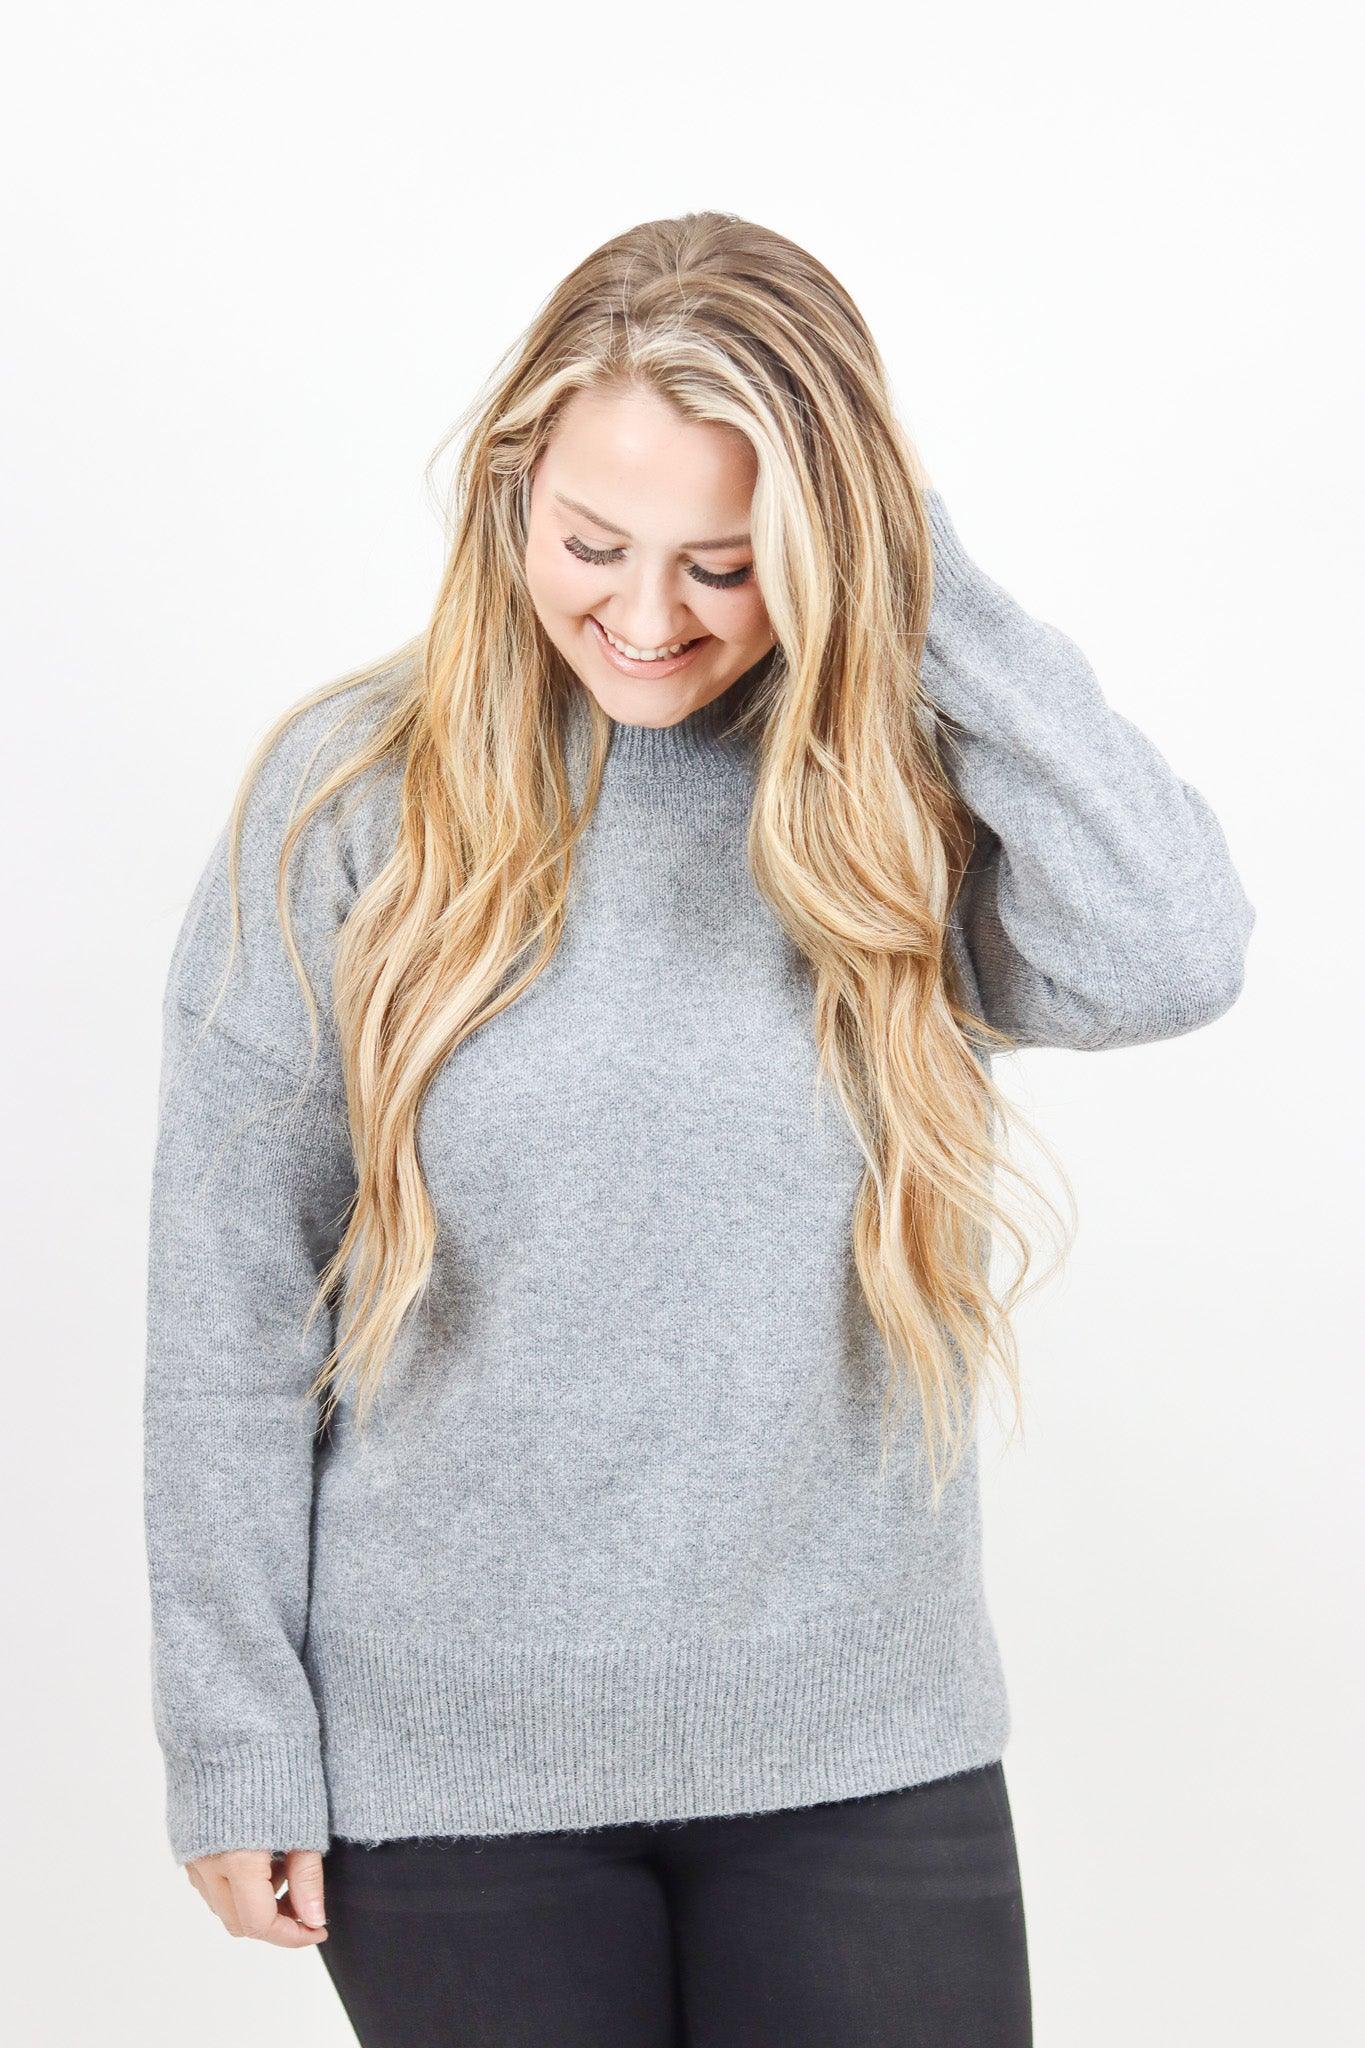 Effortlessly You Grey Sweater - Alexander Jane Boutique  